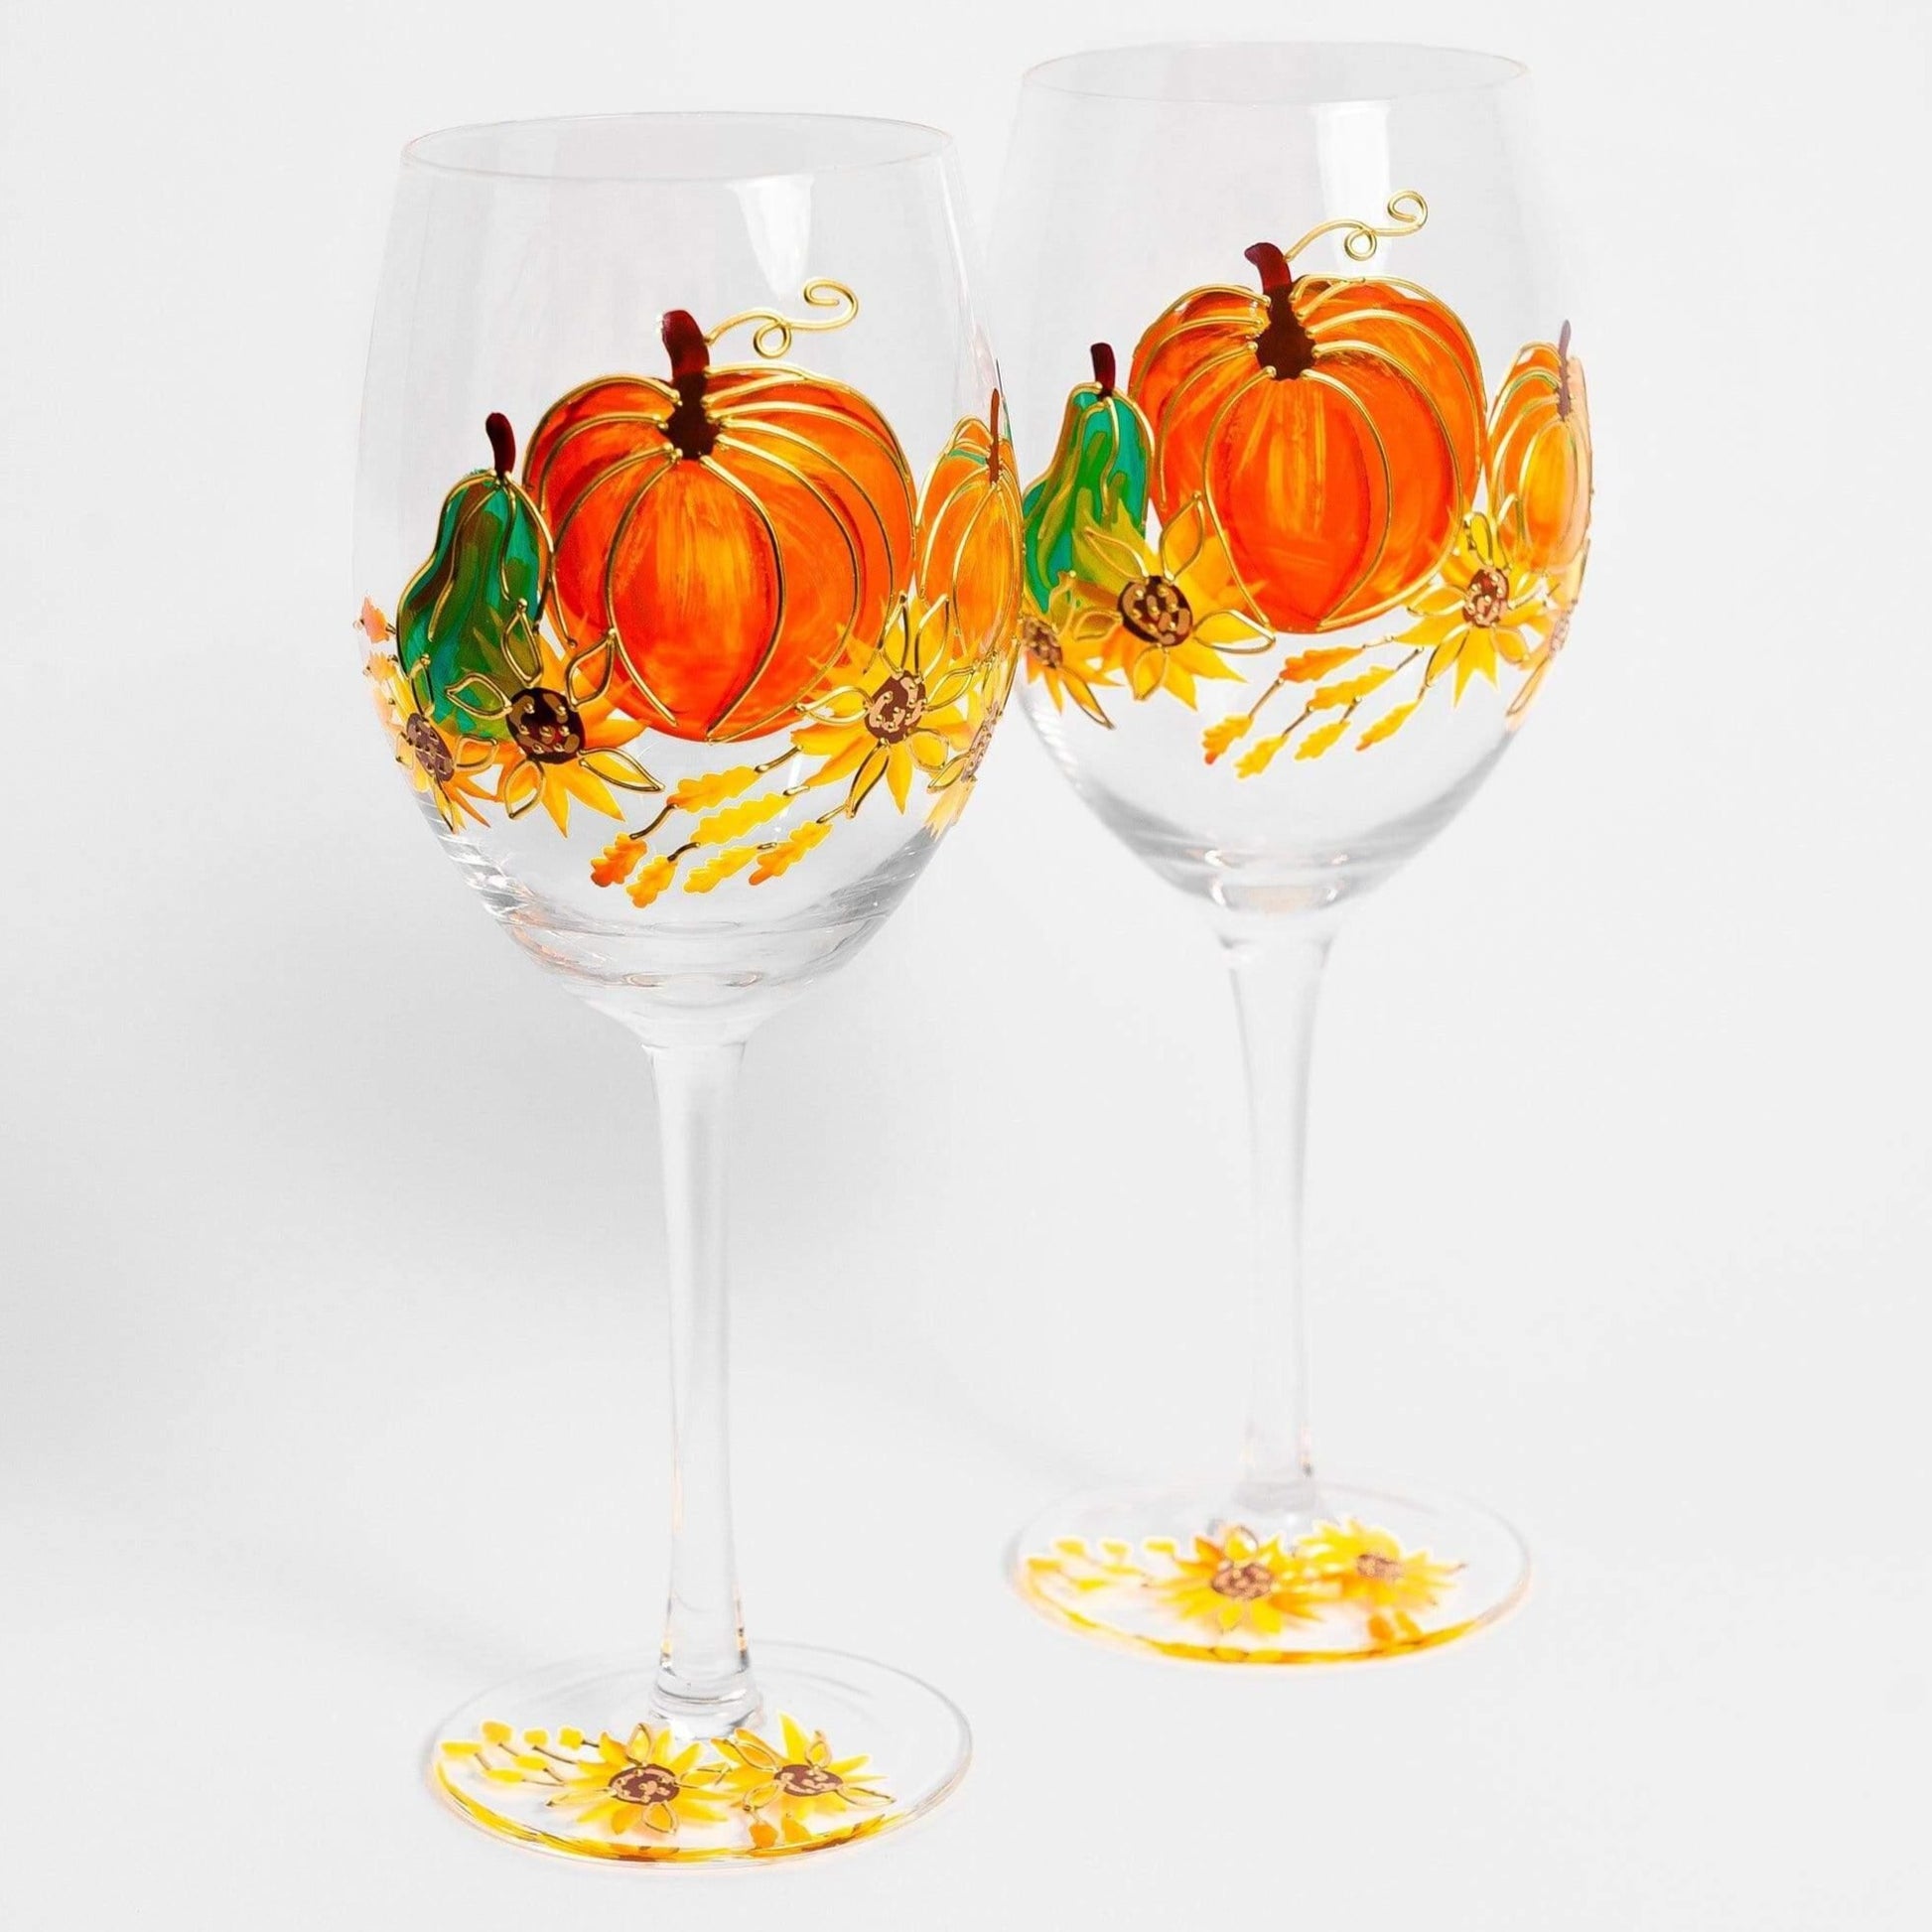 https://jerseyartglass.com/cdn/shop/products/jersey-art-glass-thanksgiving-wine-glasses-set-of-2-thanksgiving-decorations-for-table-fall-wedding-decor-fall-centerpiece-pumpkin-mug-30642964431012.jpg?v=1698342991&width=1946